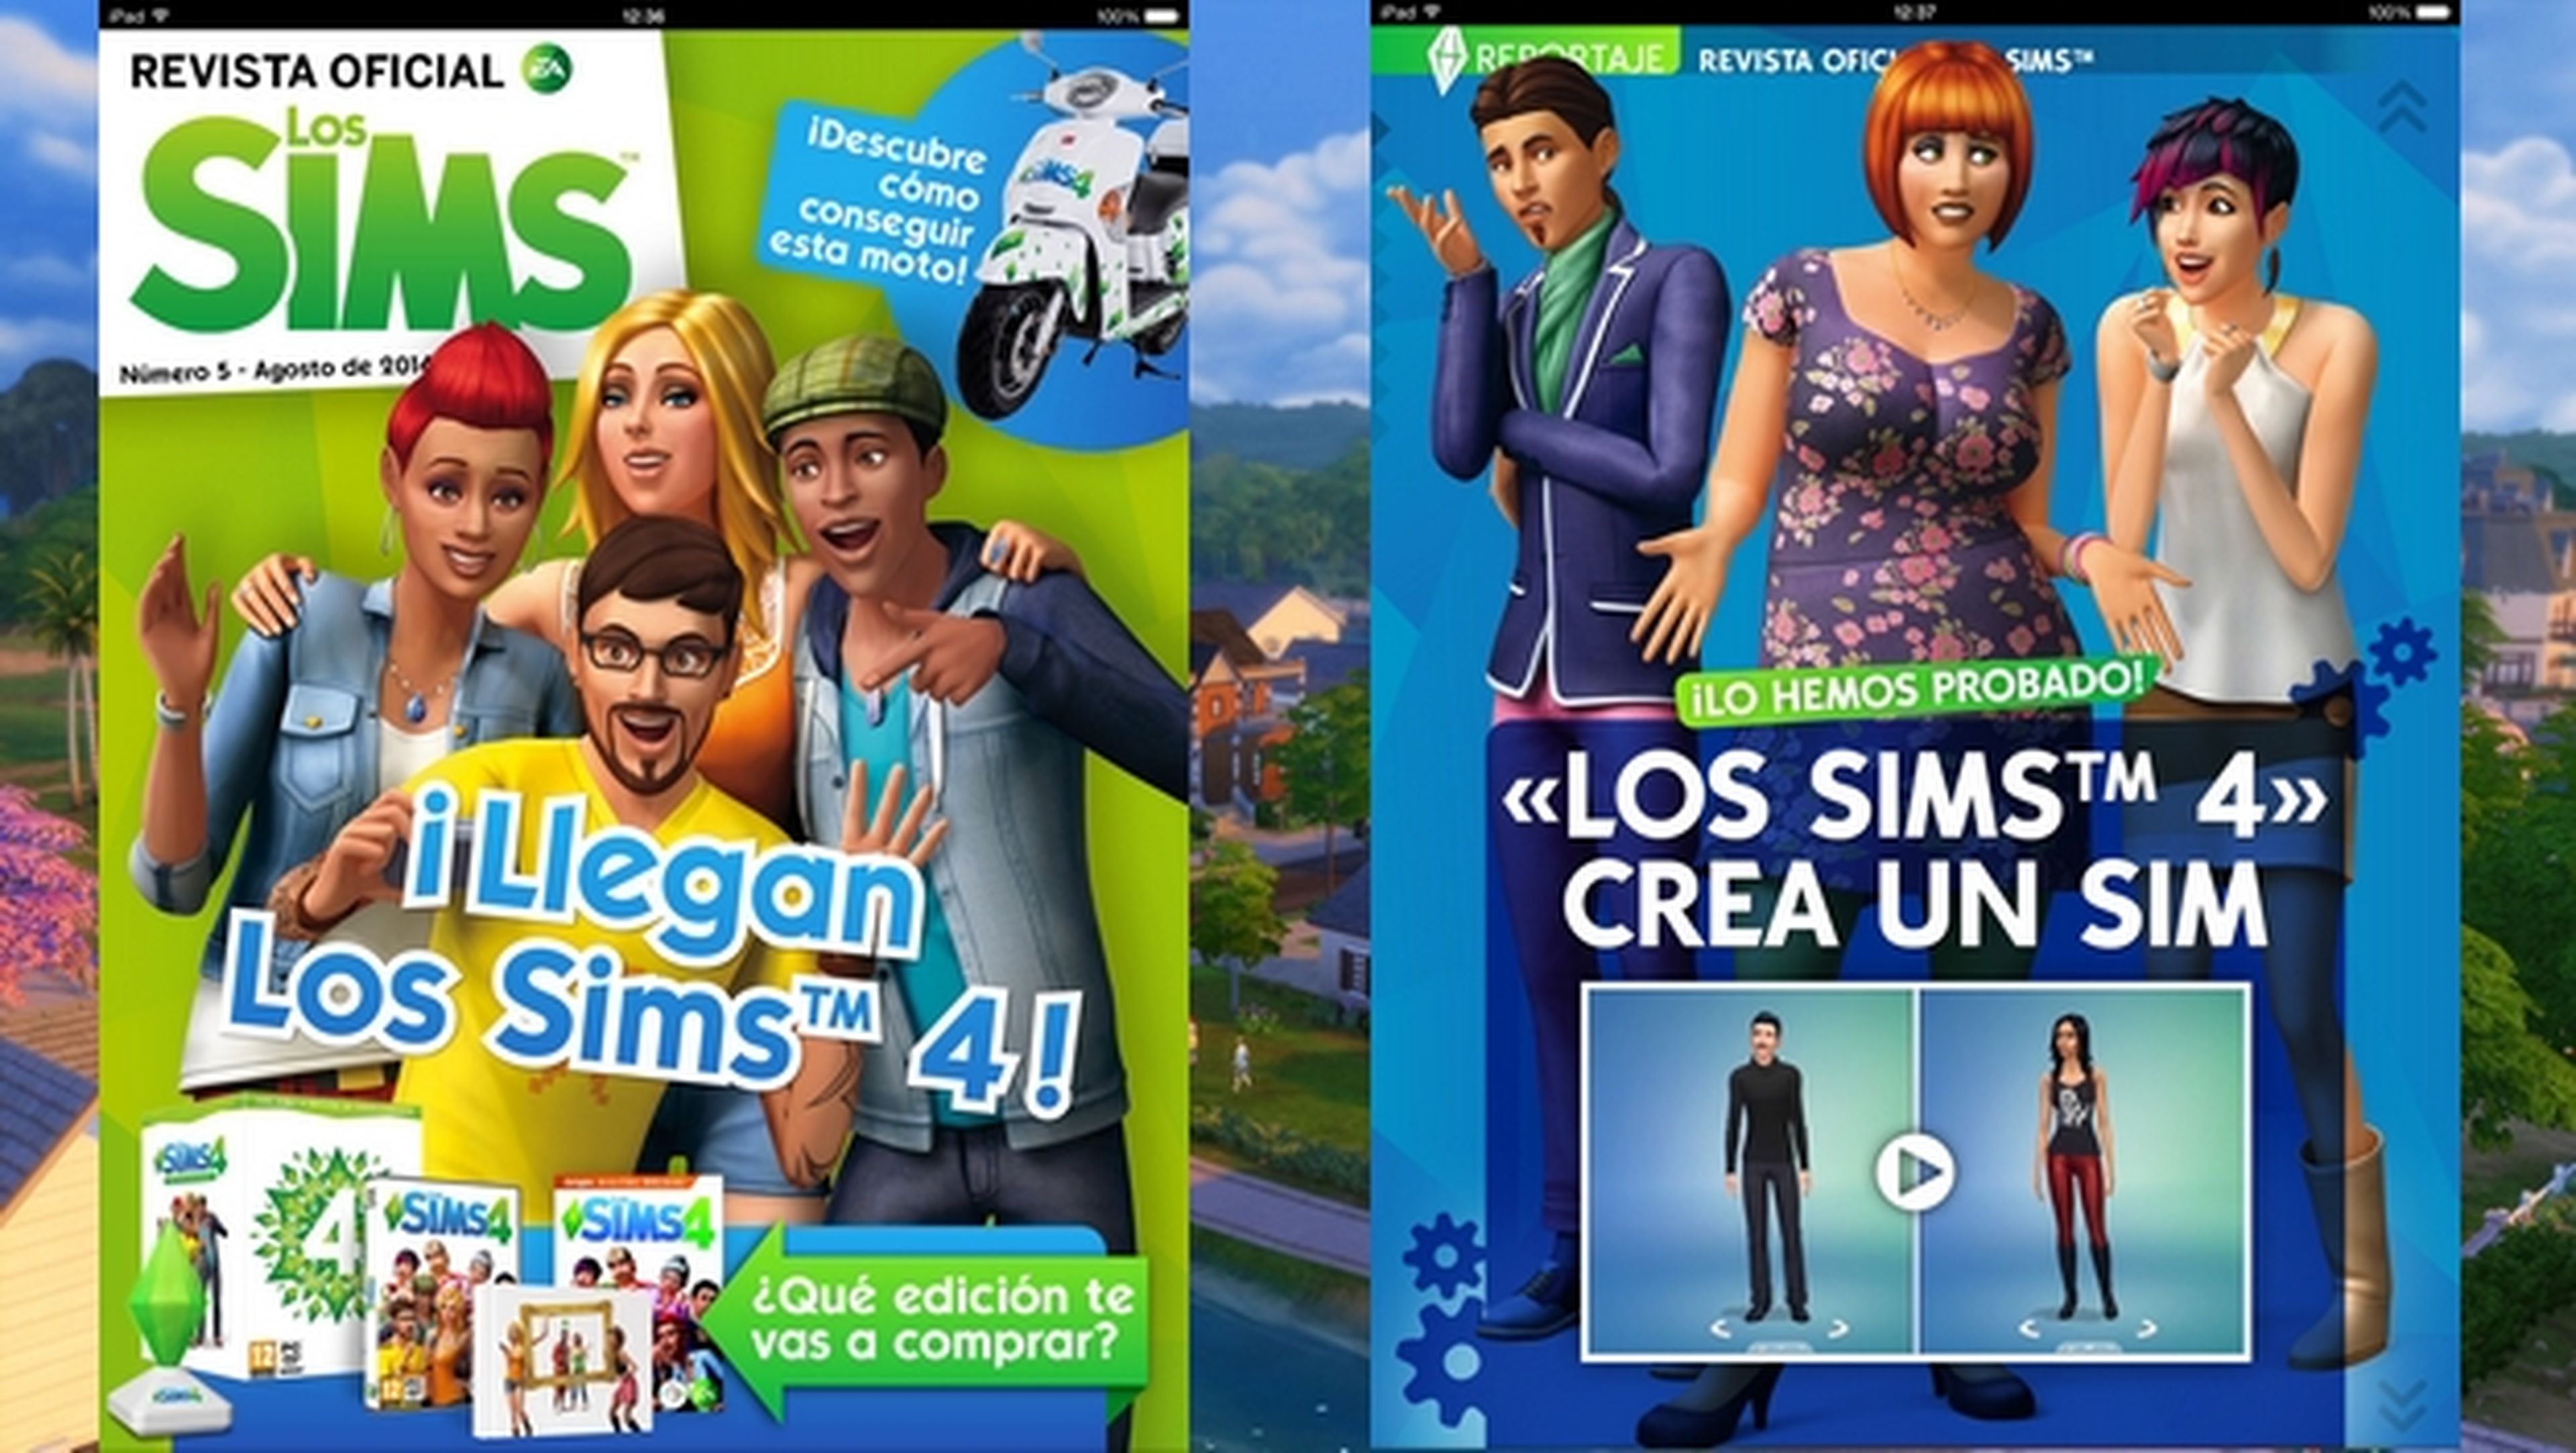 Regresa la Revista oficial de los Sims, una revista digital gratuita mensual para iOS y Android con noticias, trucos, estrategias, y prácticos para sacar el máximo provecho a Los Sims 4.